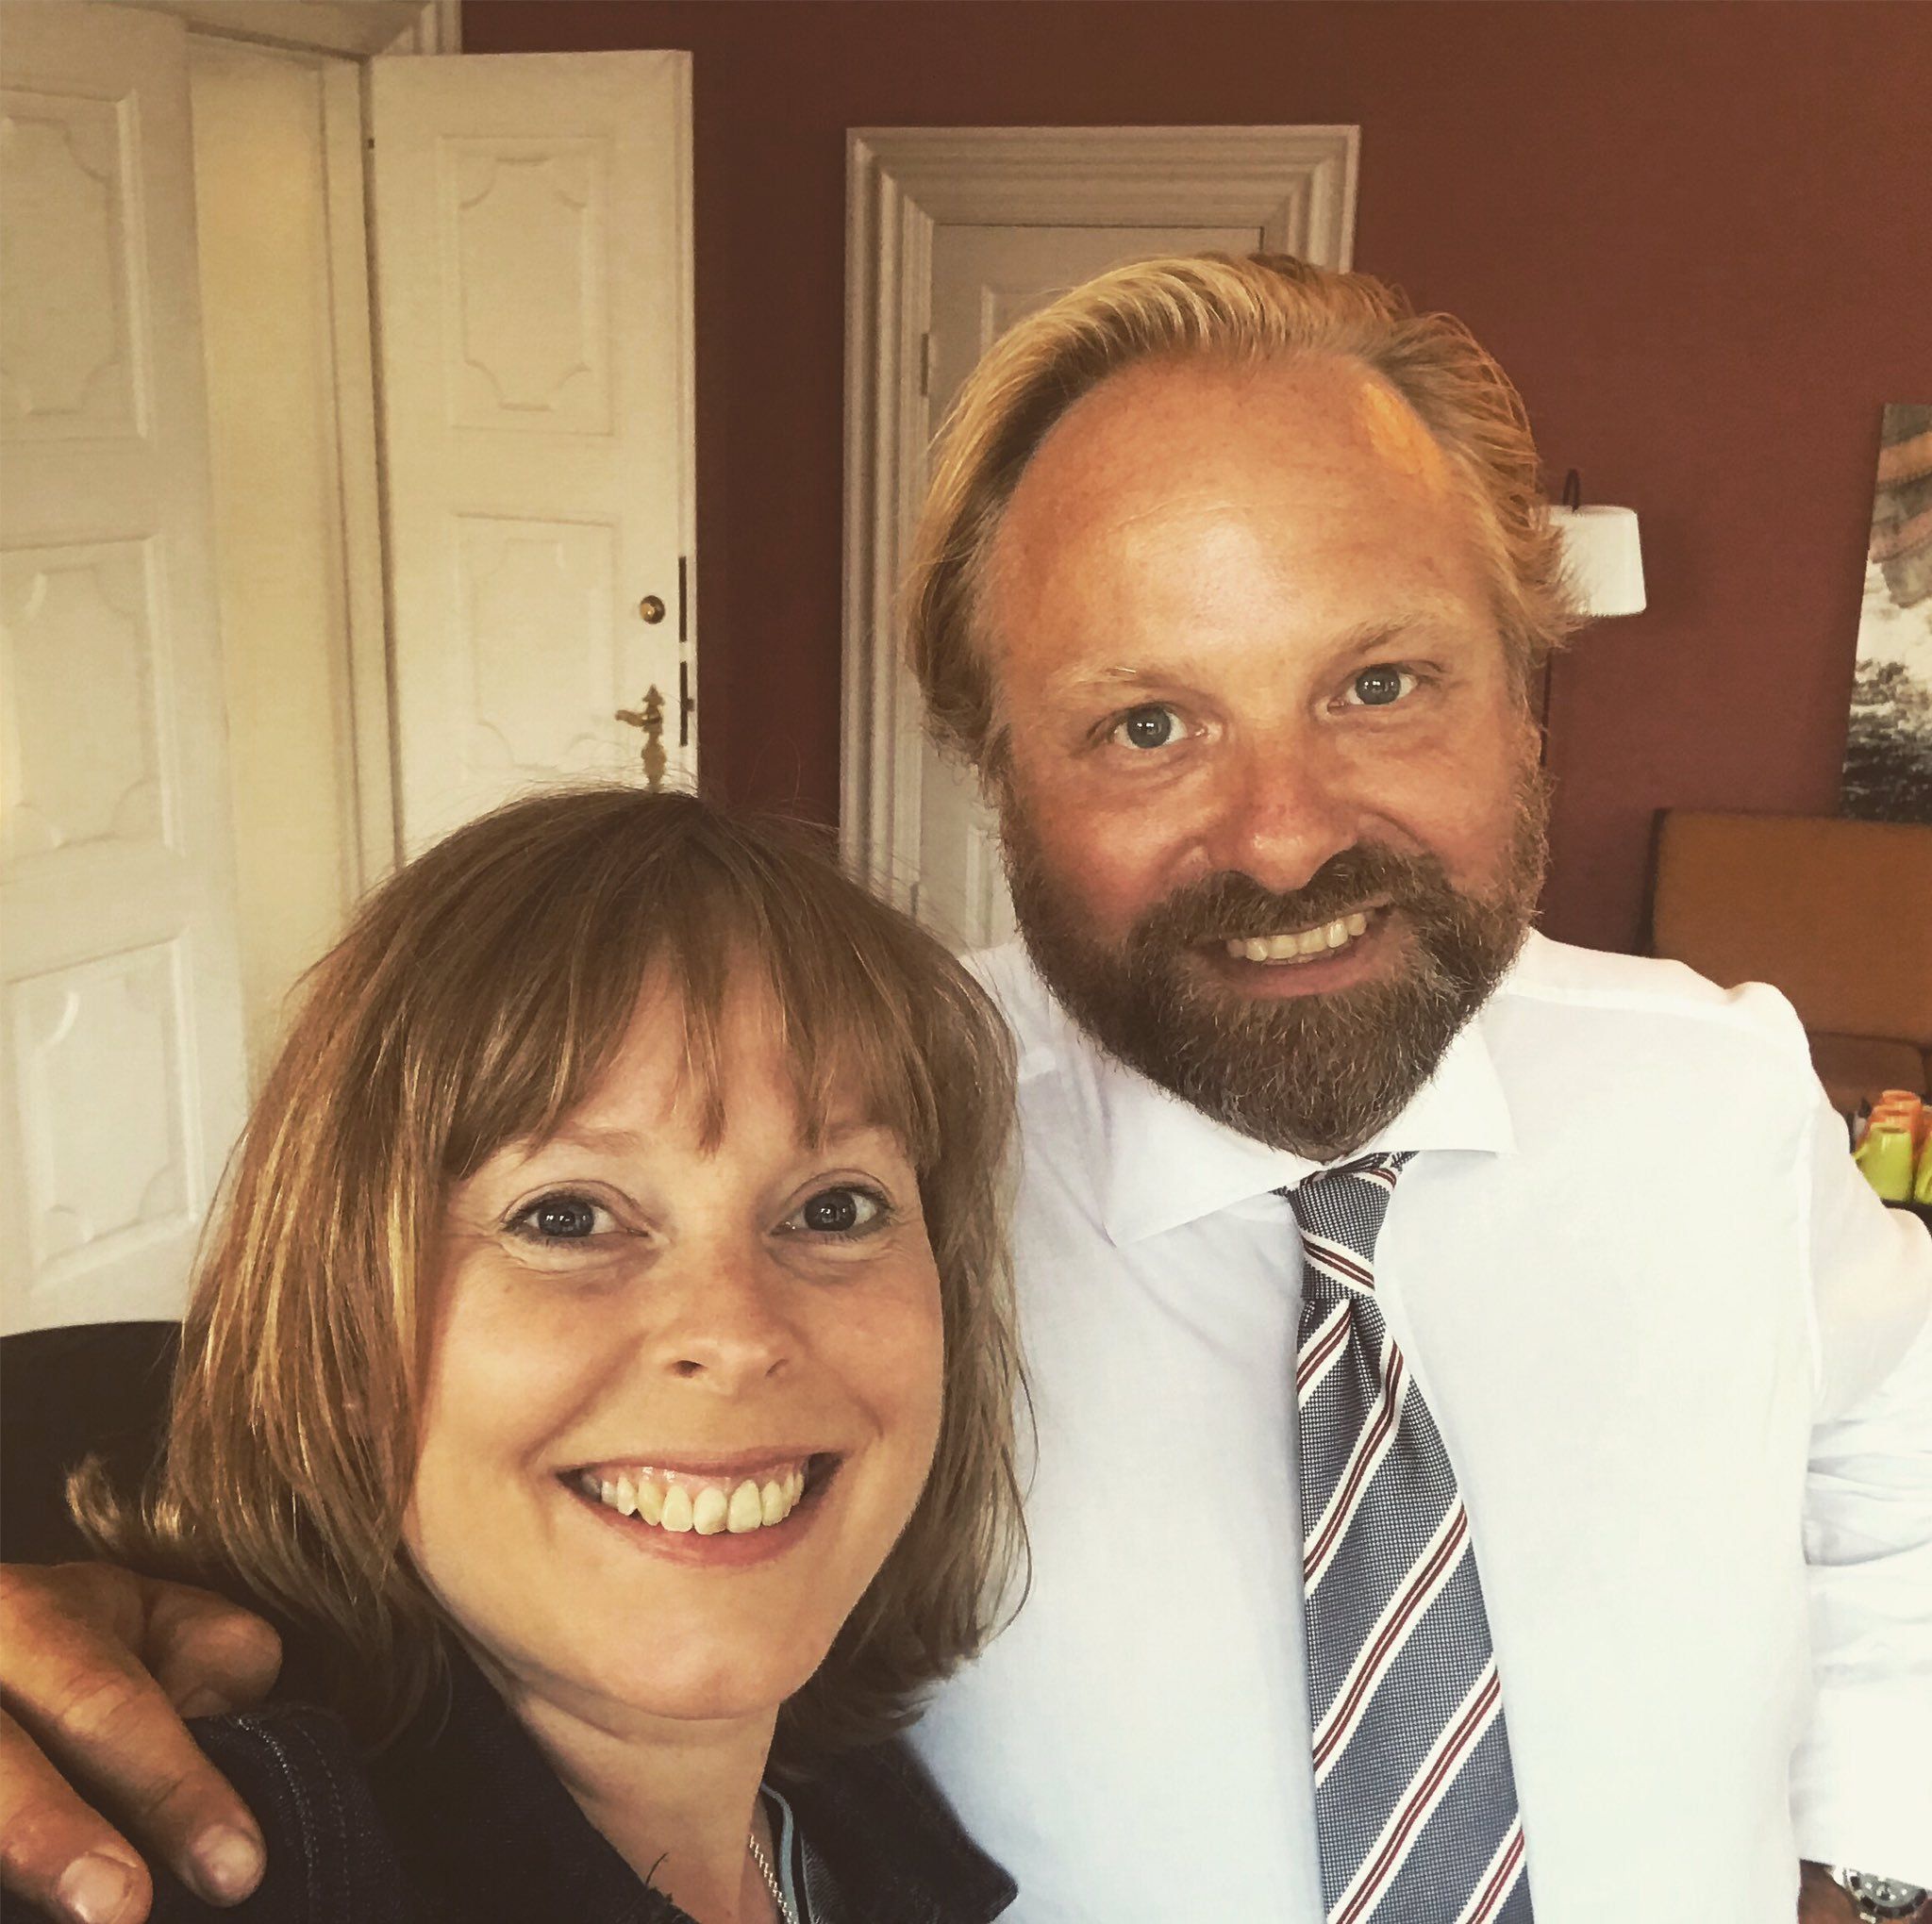 Den nye kulturminister, Joy Mogensen, med sin nye spindoktor, Kasper Fogh; en politiske begavelse af de få. Excellent choice. Foto: Kasper Foghs Twitter.